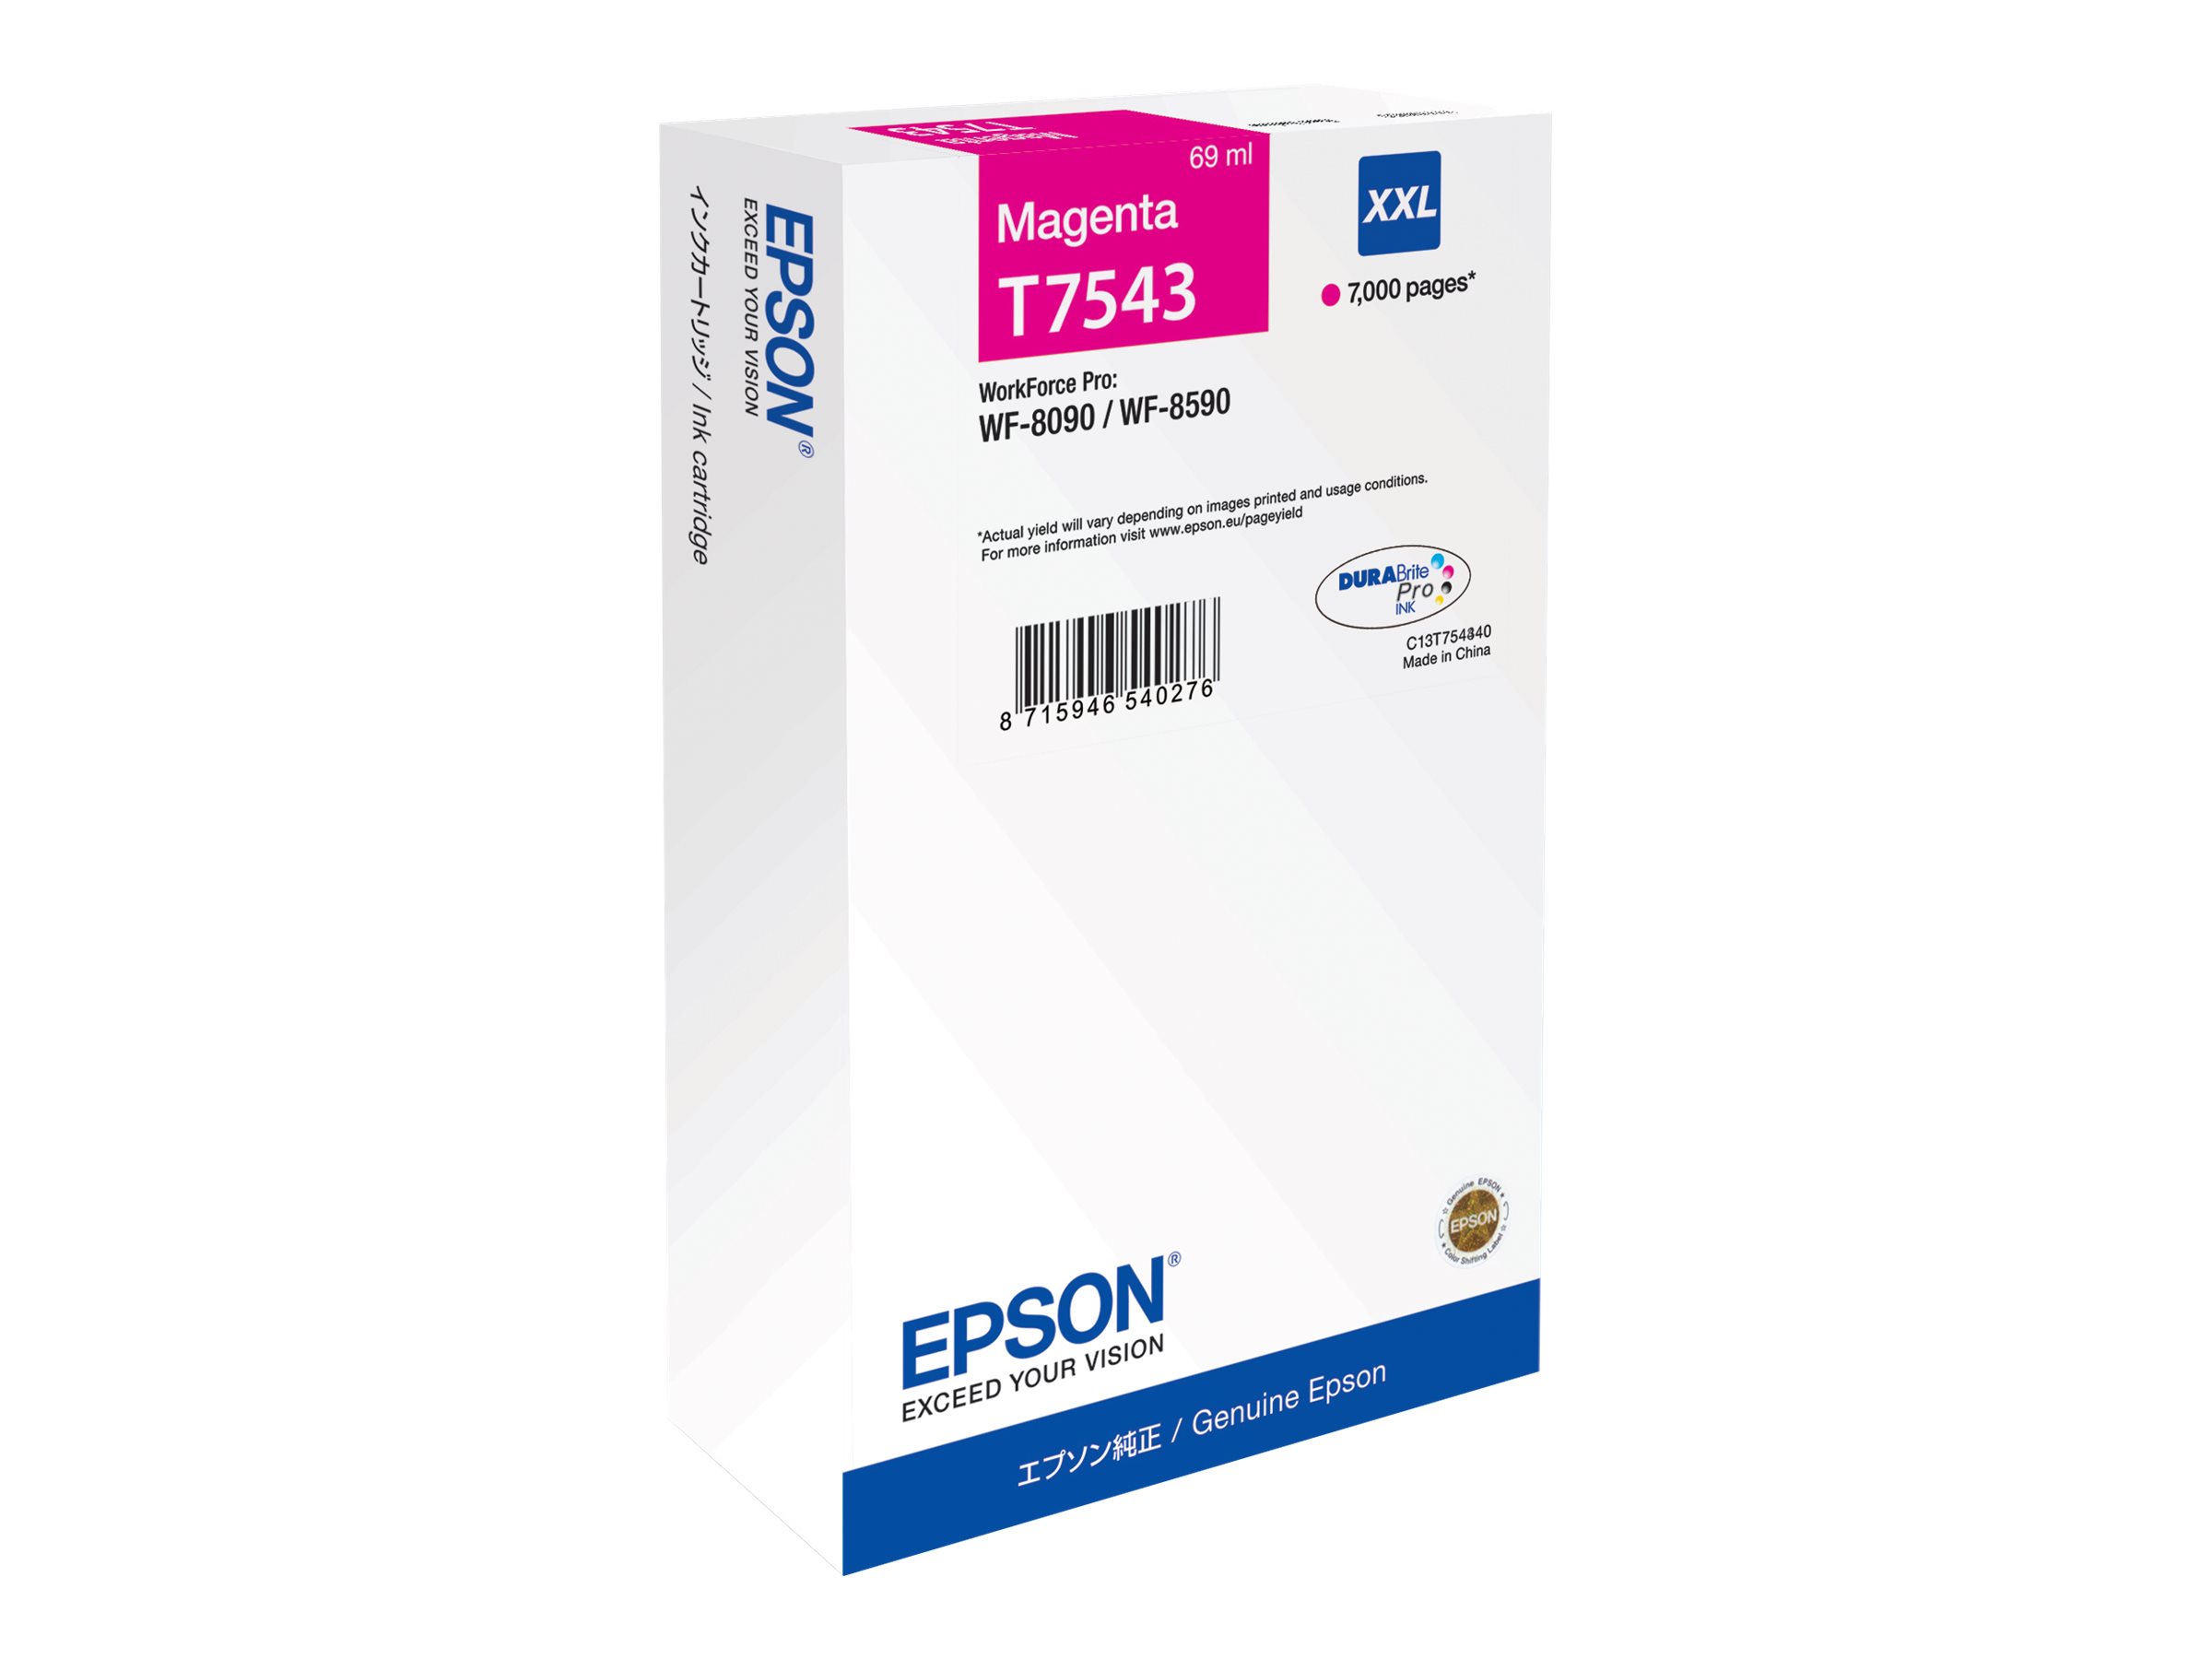 Epson T7543 - 69 ml - Größe XXL - Magenta - original - Tintenpatrone